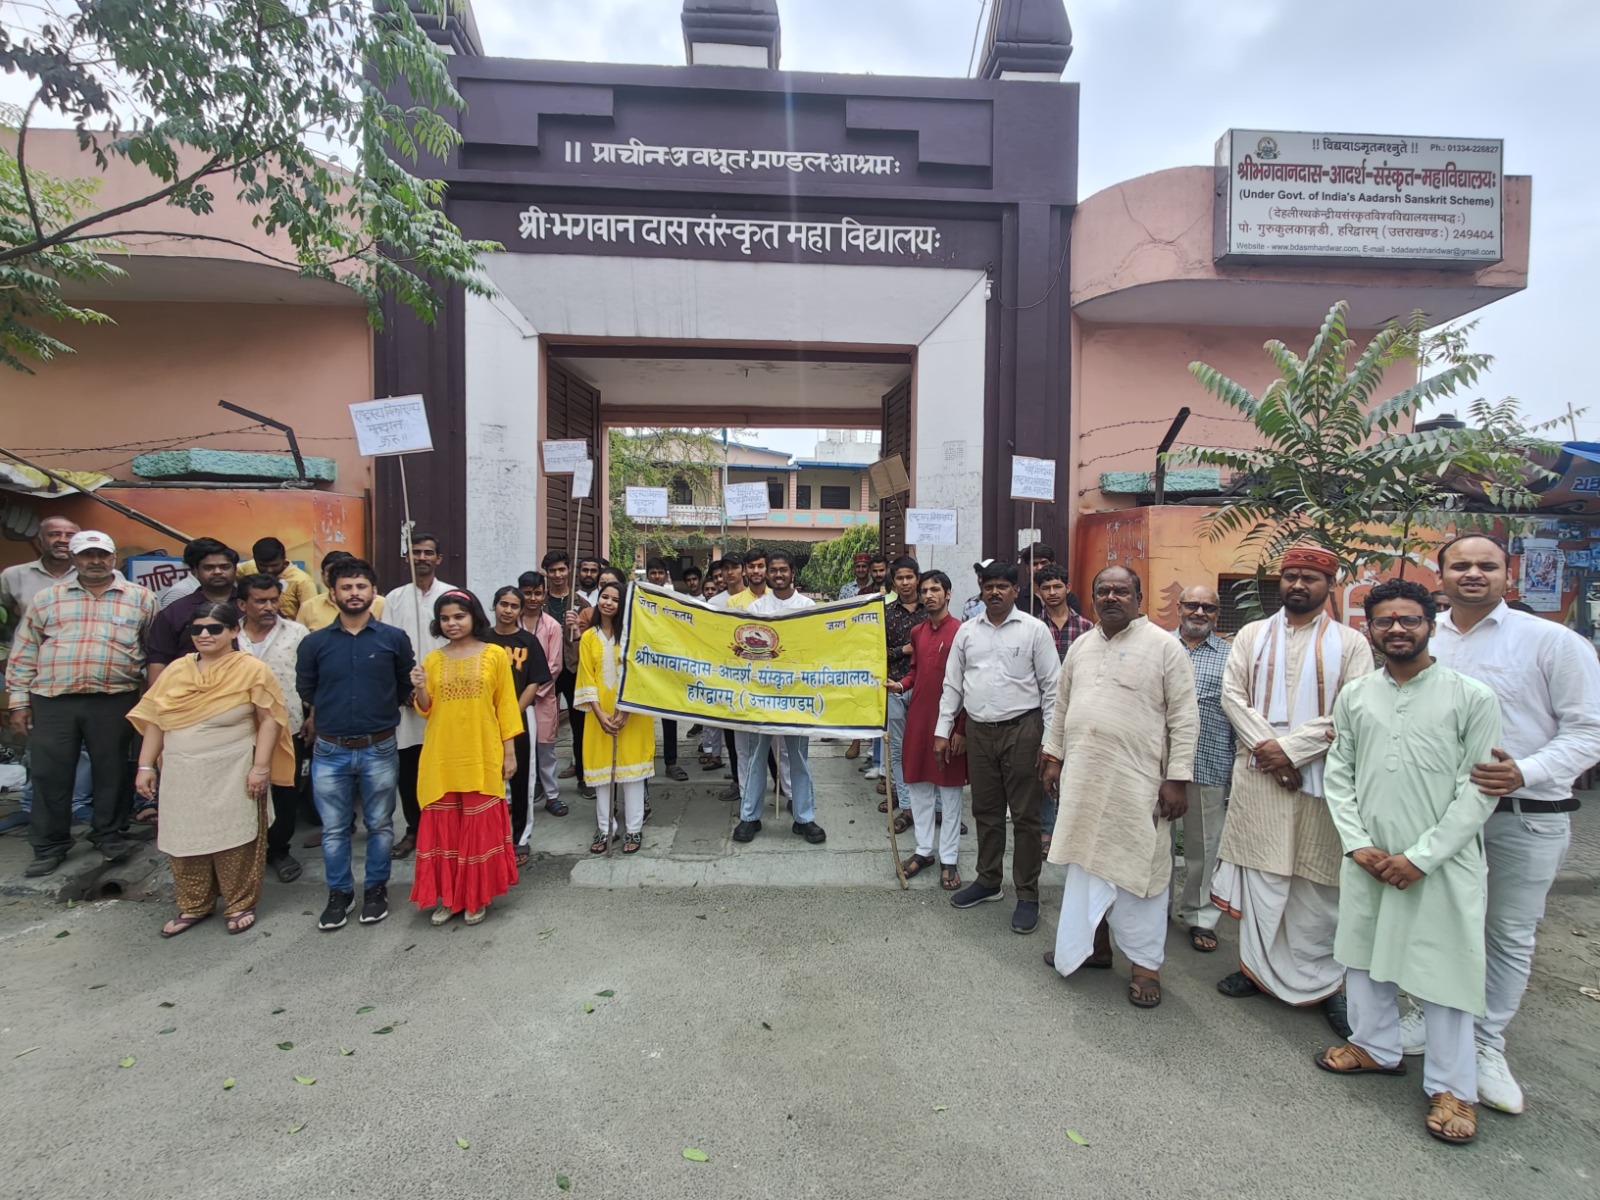 श्री भगवानदास आदर्श संस्कृत महाविद्यालय के छात्रों ने किया मतदान के लिये जागरुक